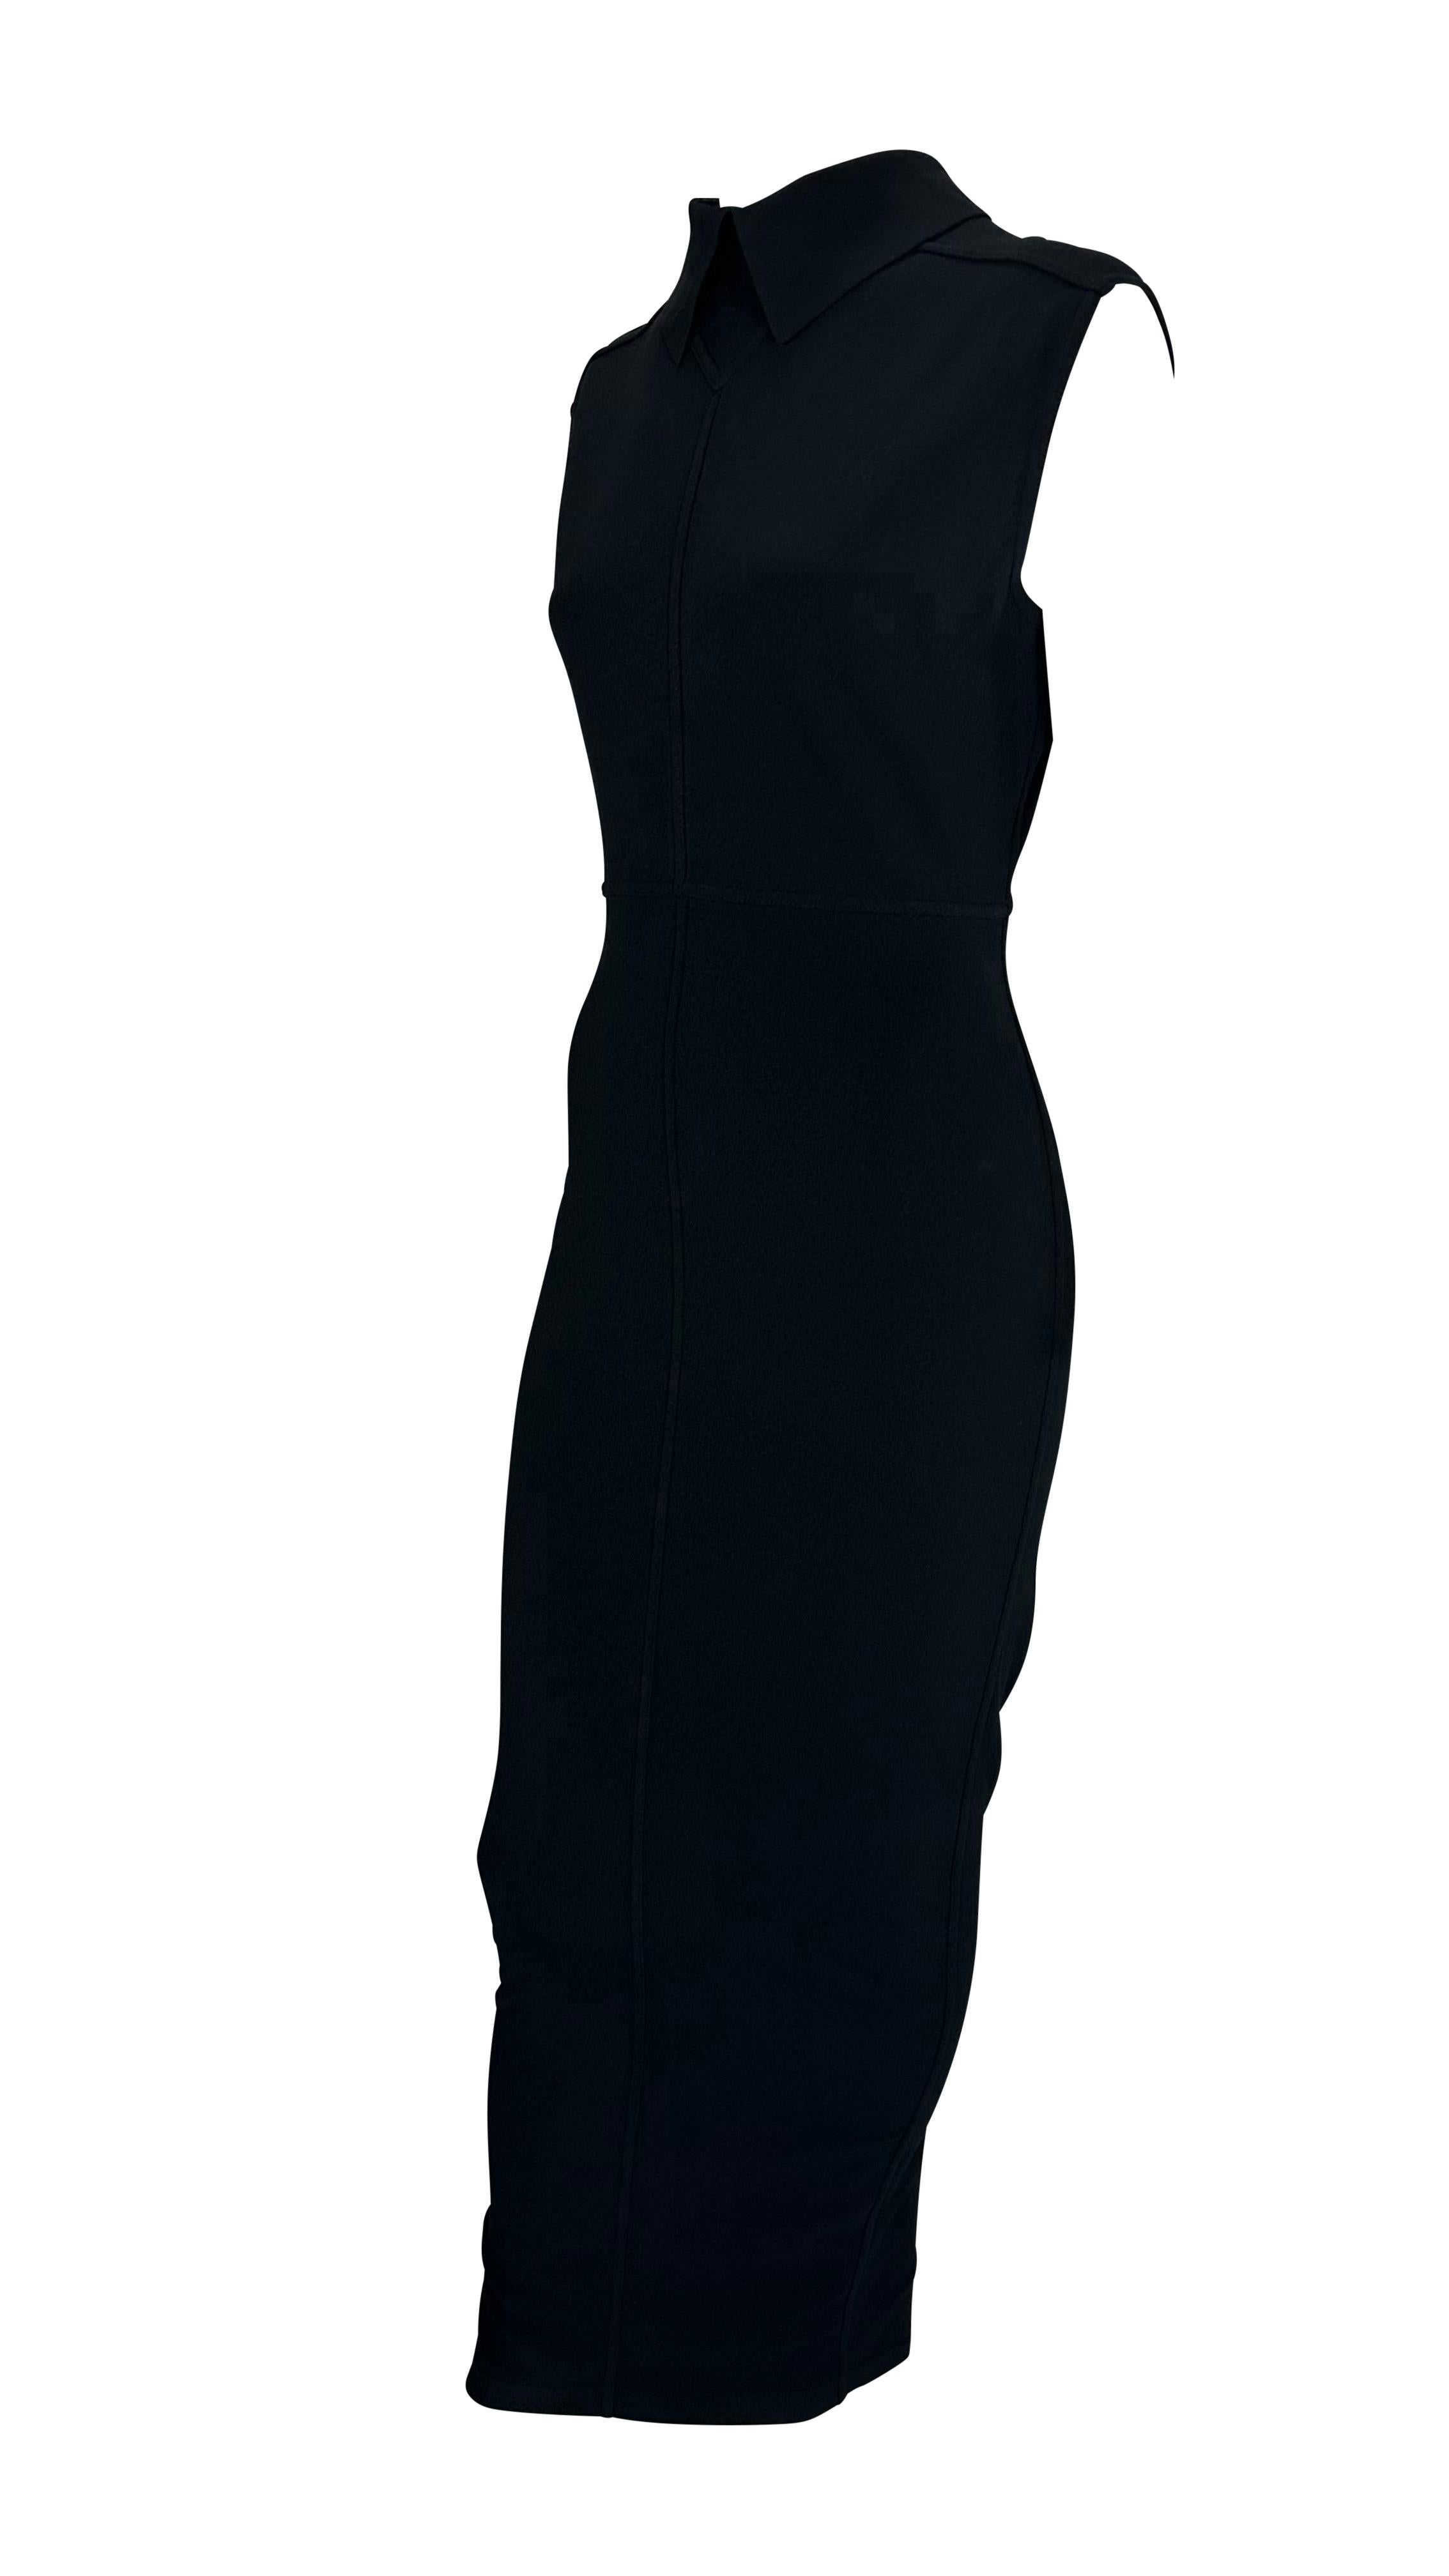 S/S 1989 Azzedine Alaïa Runway Black Cutout Collar Knit Bodycon Stretch Dress For Sale 3